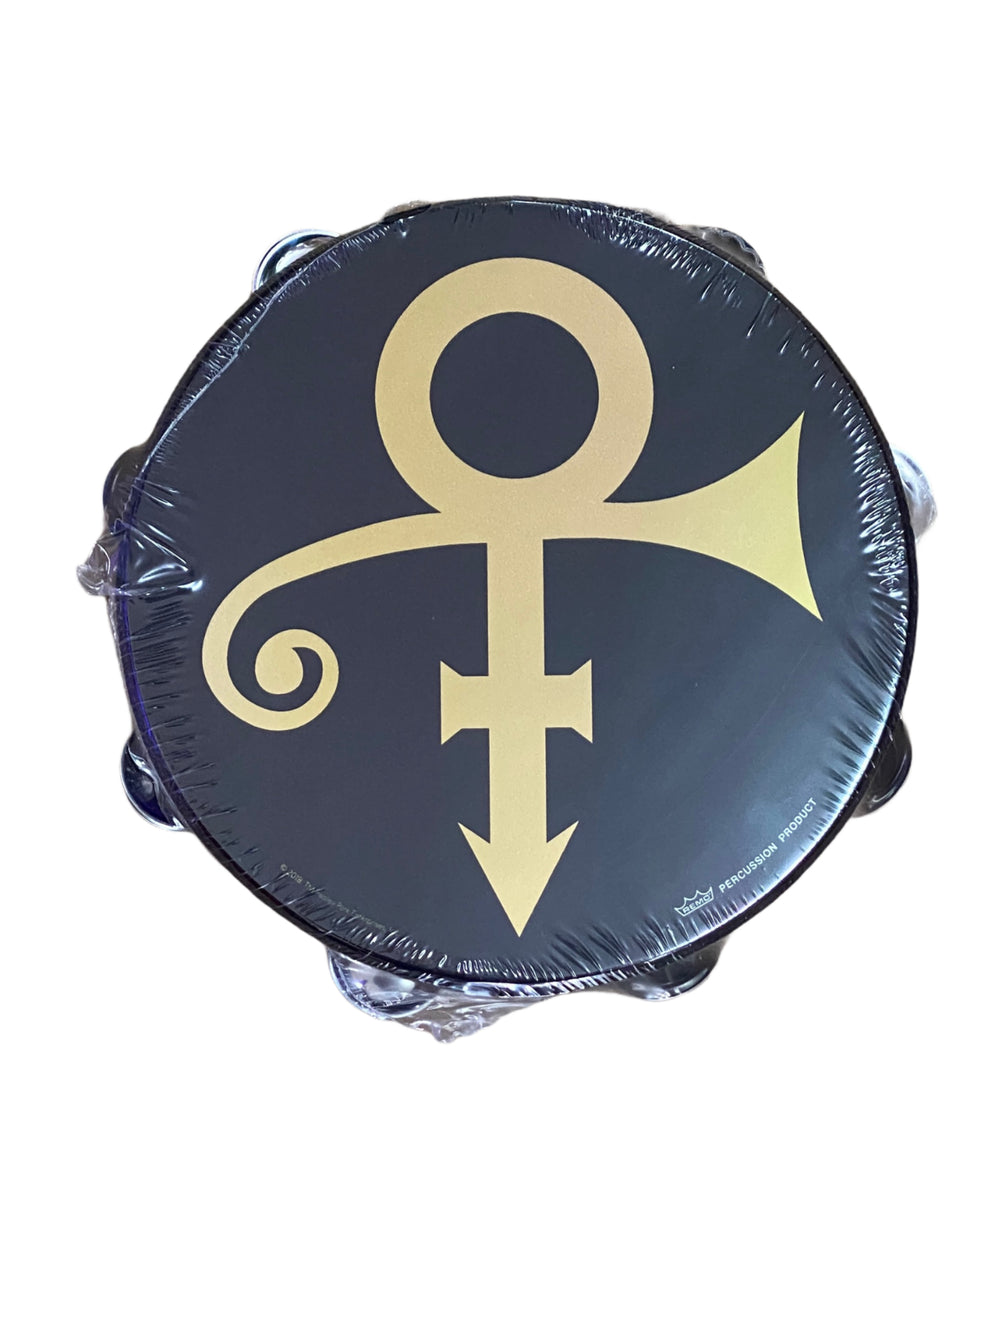 プリンス シンボル タンバリン/Prince Symbol tambourine